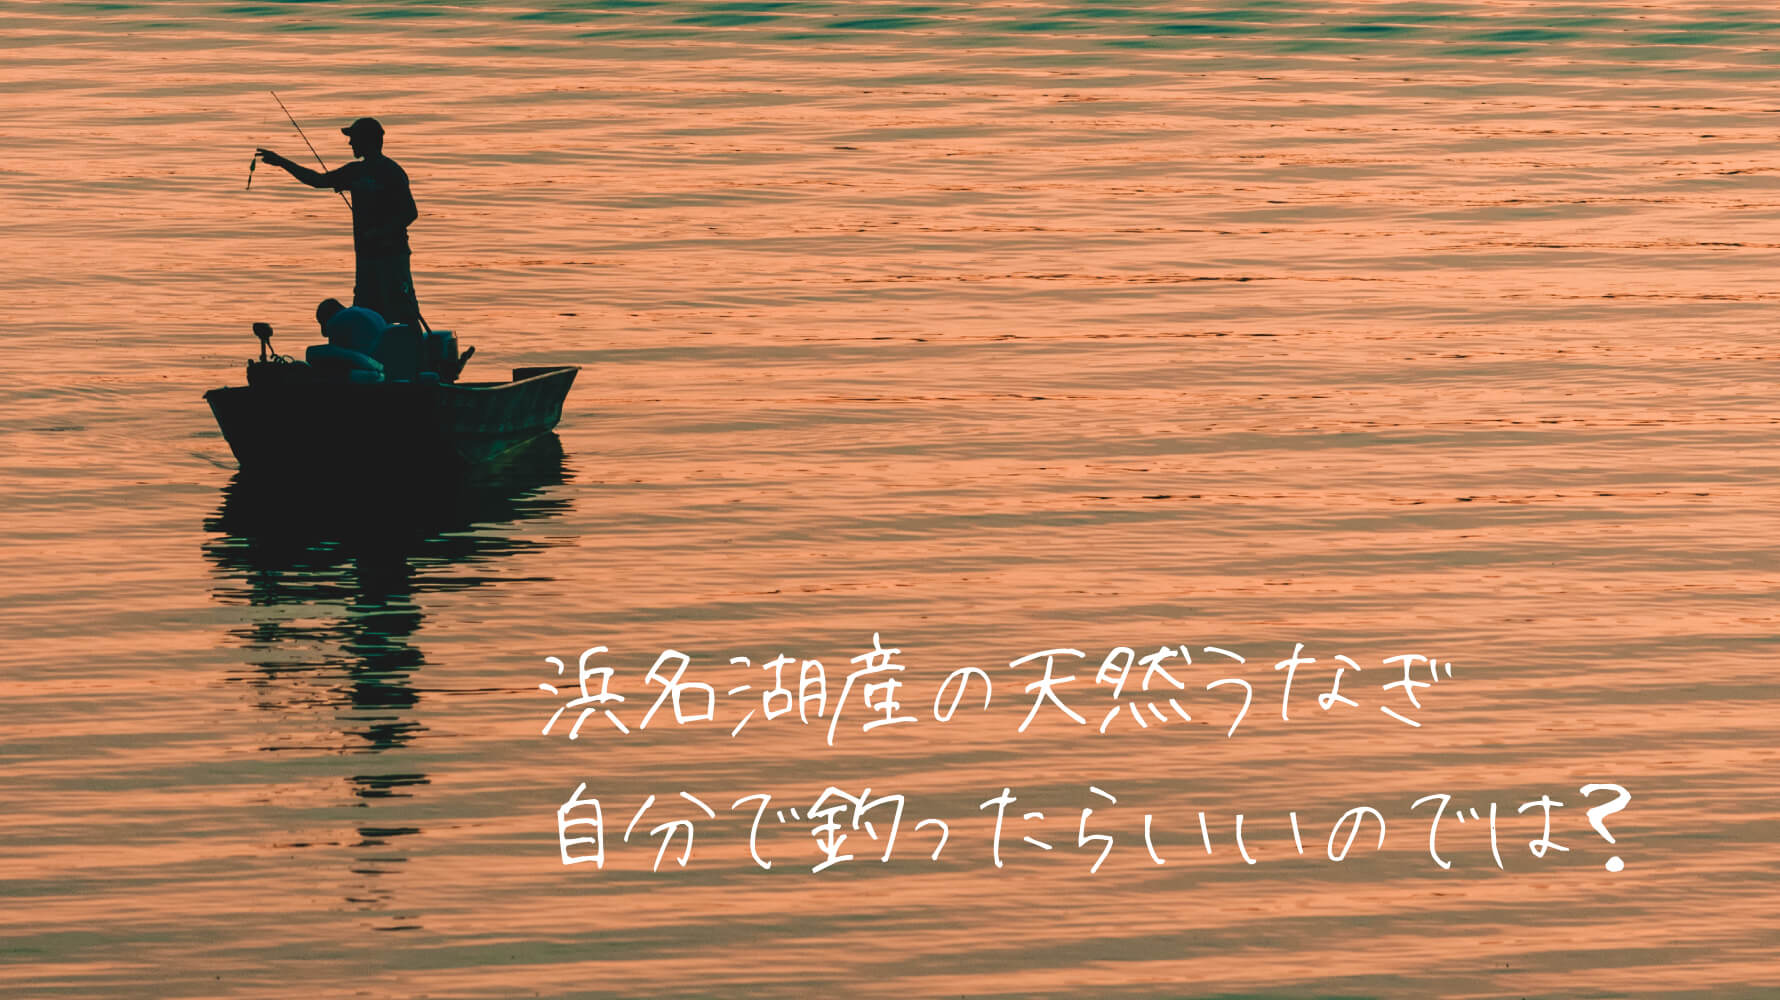 浜松で 浜名湖産の天然うなぎ を釣る 天狗ちゃん下界で遊ぶ